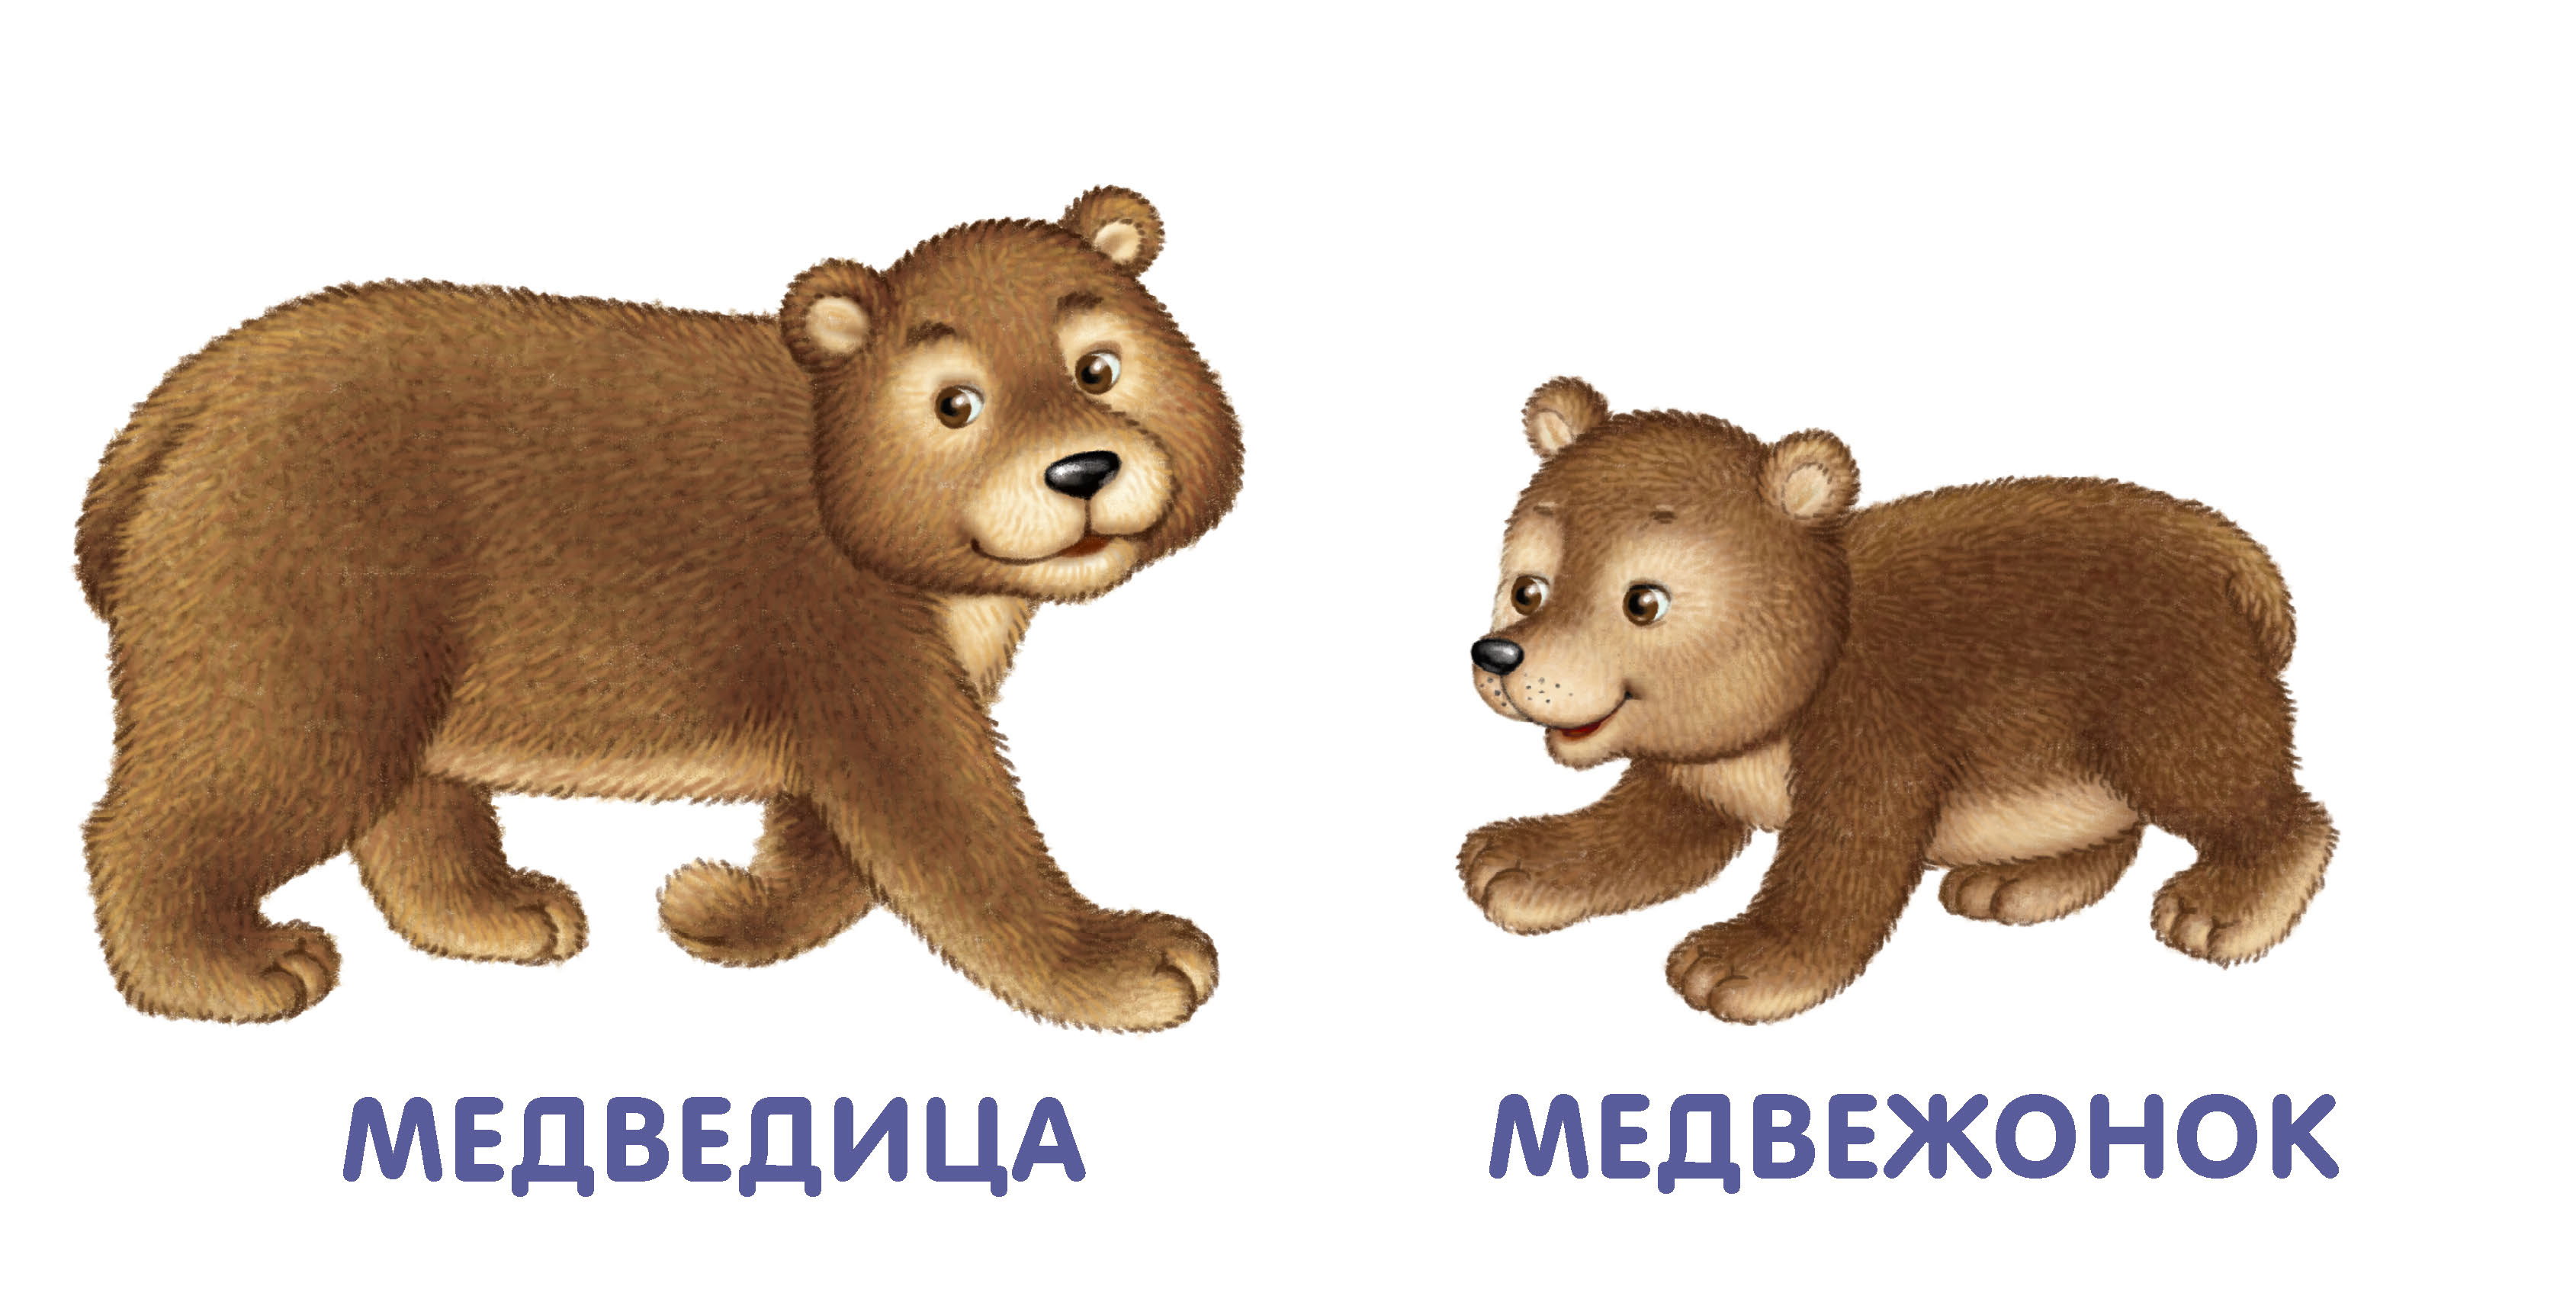 Карточки с изображением медведя для детей